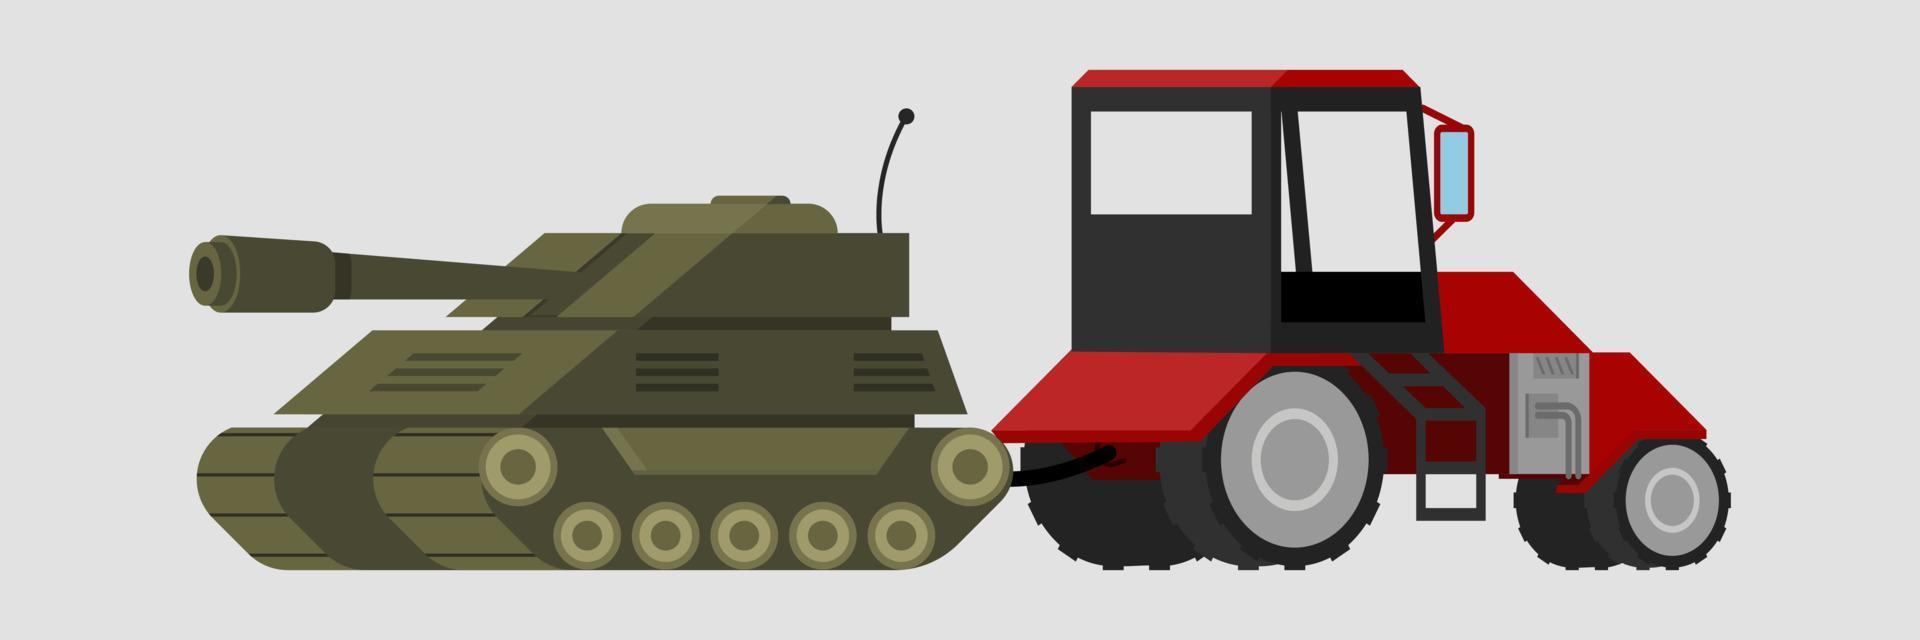 un trattore tira un carro armato, meme ucraino. ucraino in guerra. Illustrazione vettoriale su sfondo bianco